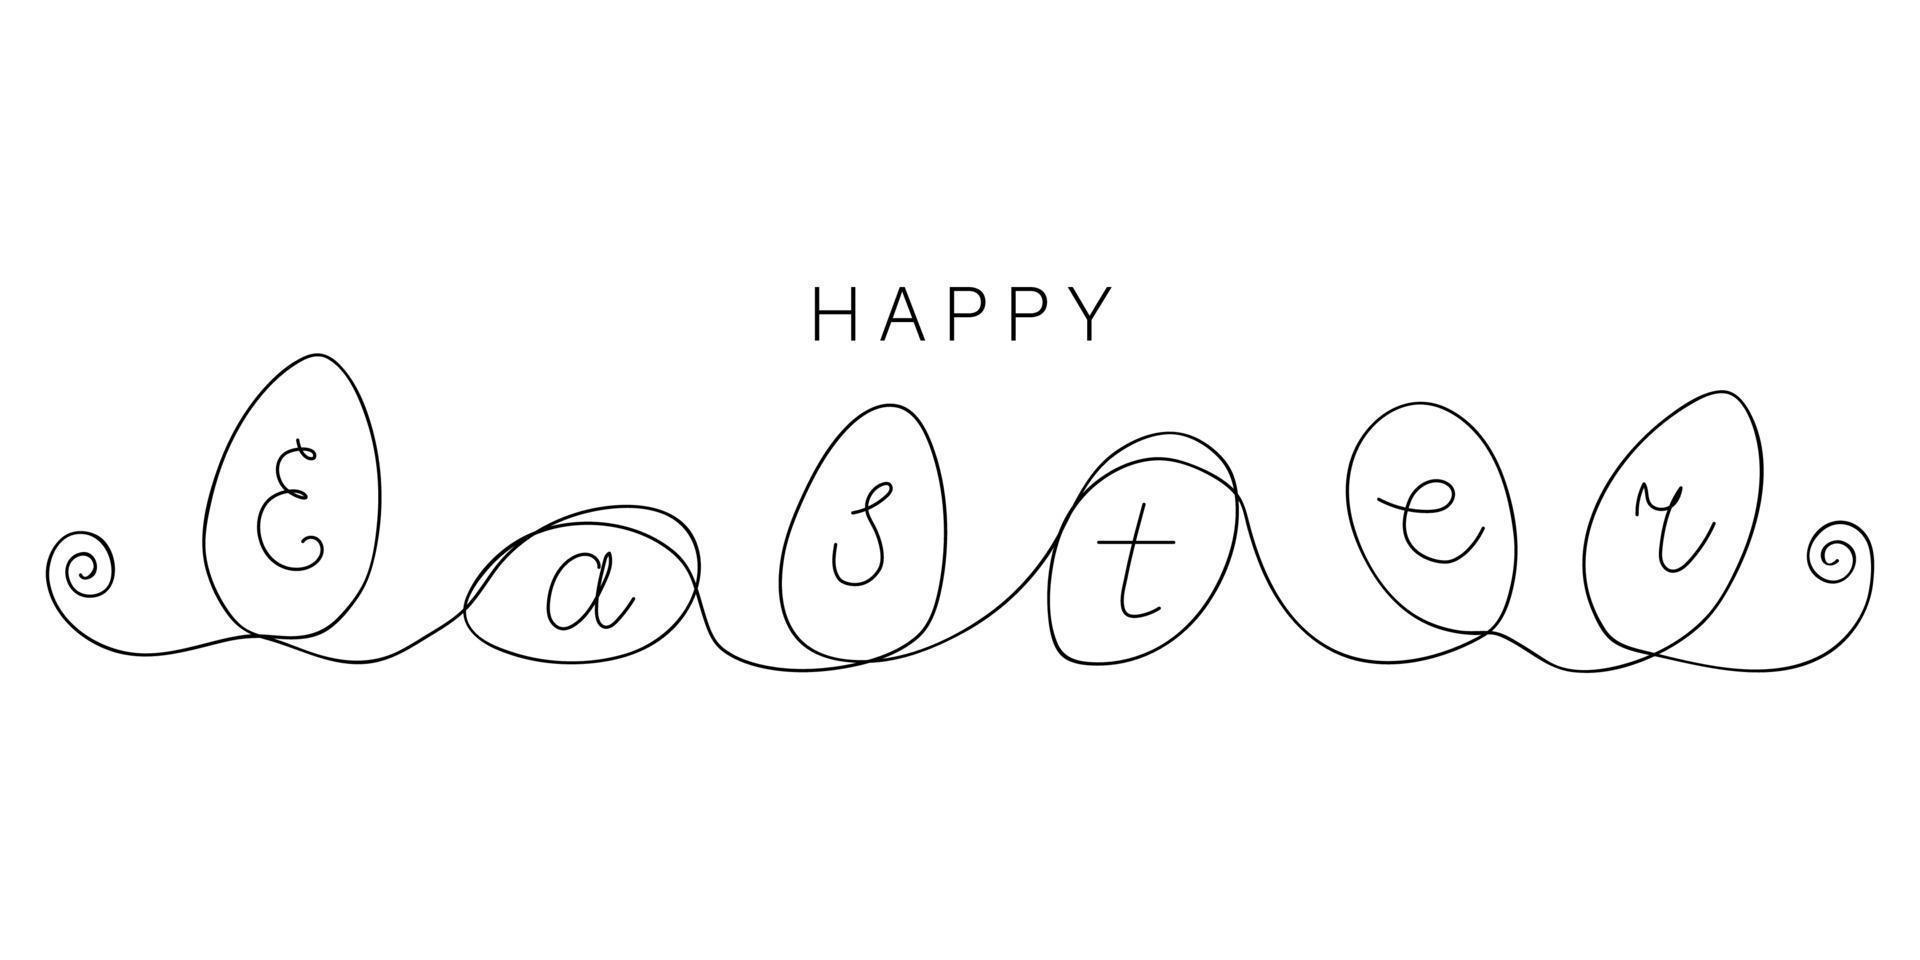 glad påsk text med rullande ägg ritade av en rad. festlig skiss. horisontell hälsning banner. minimalistisk konst. enkel vektorillustration. vektor